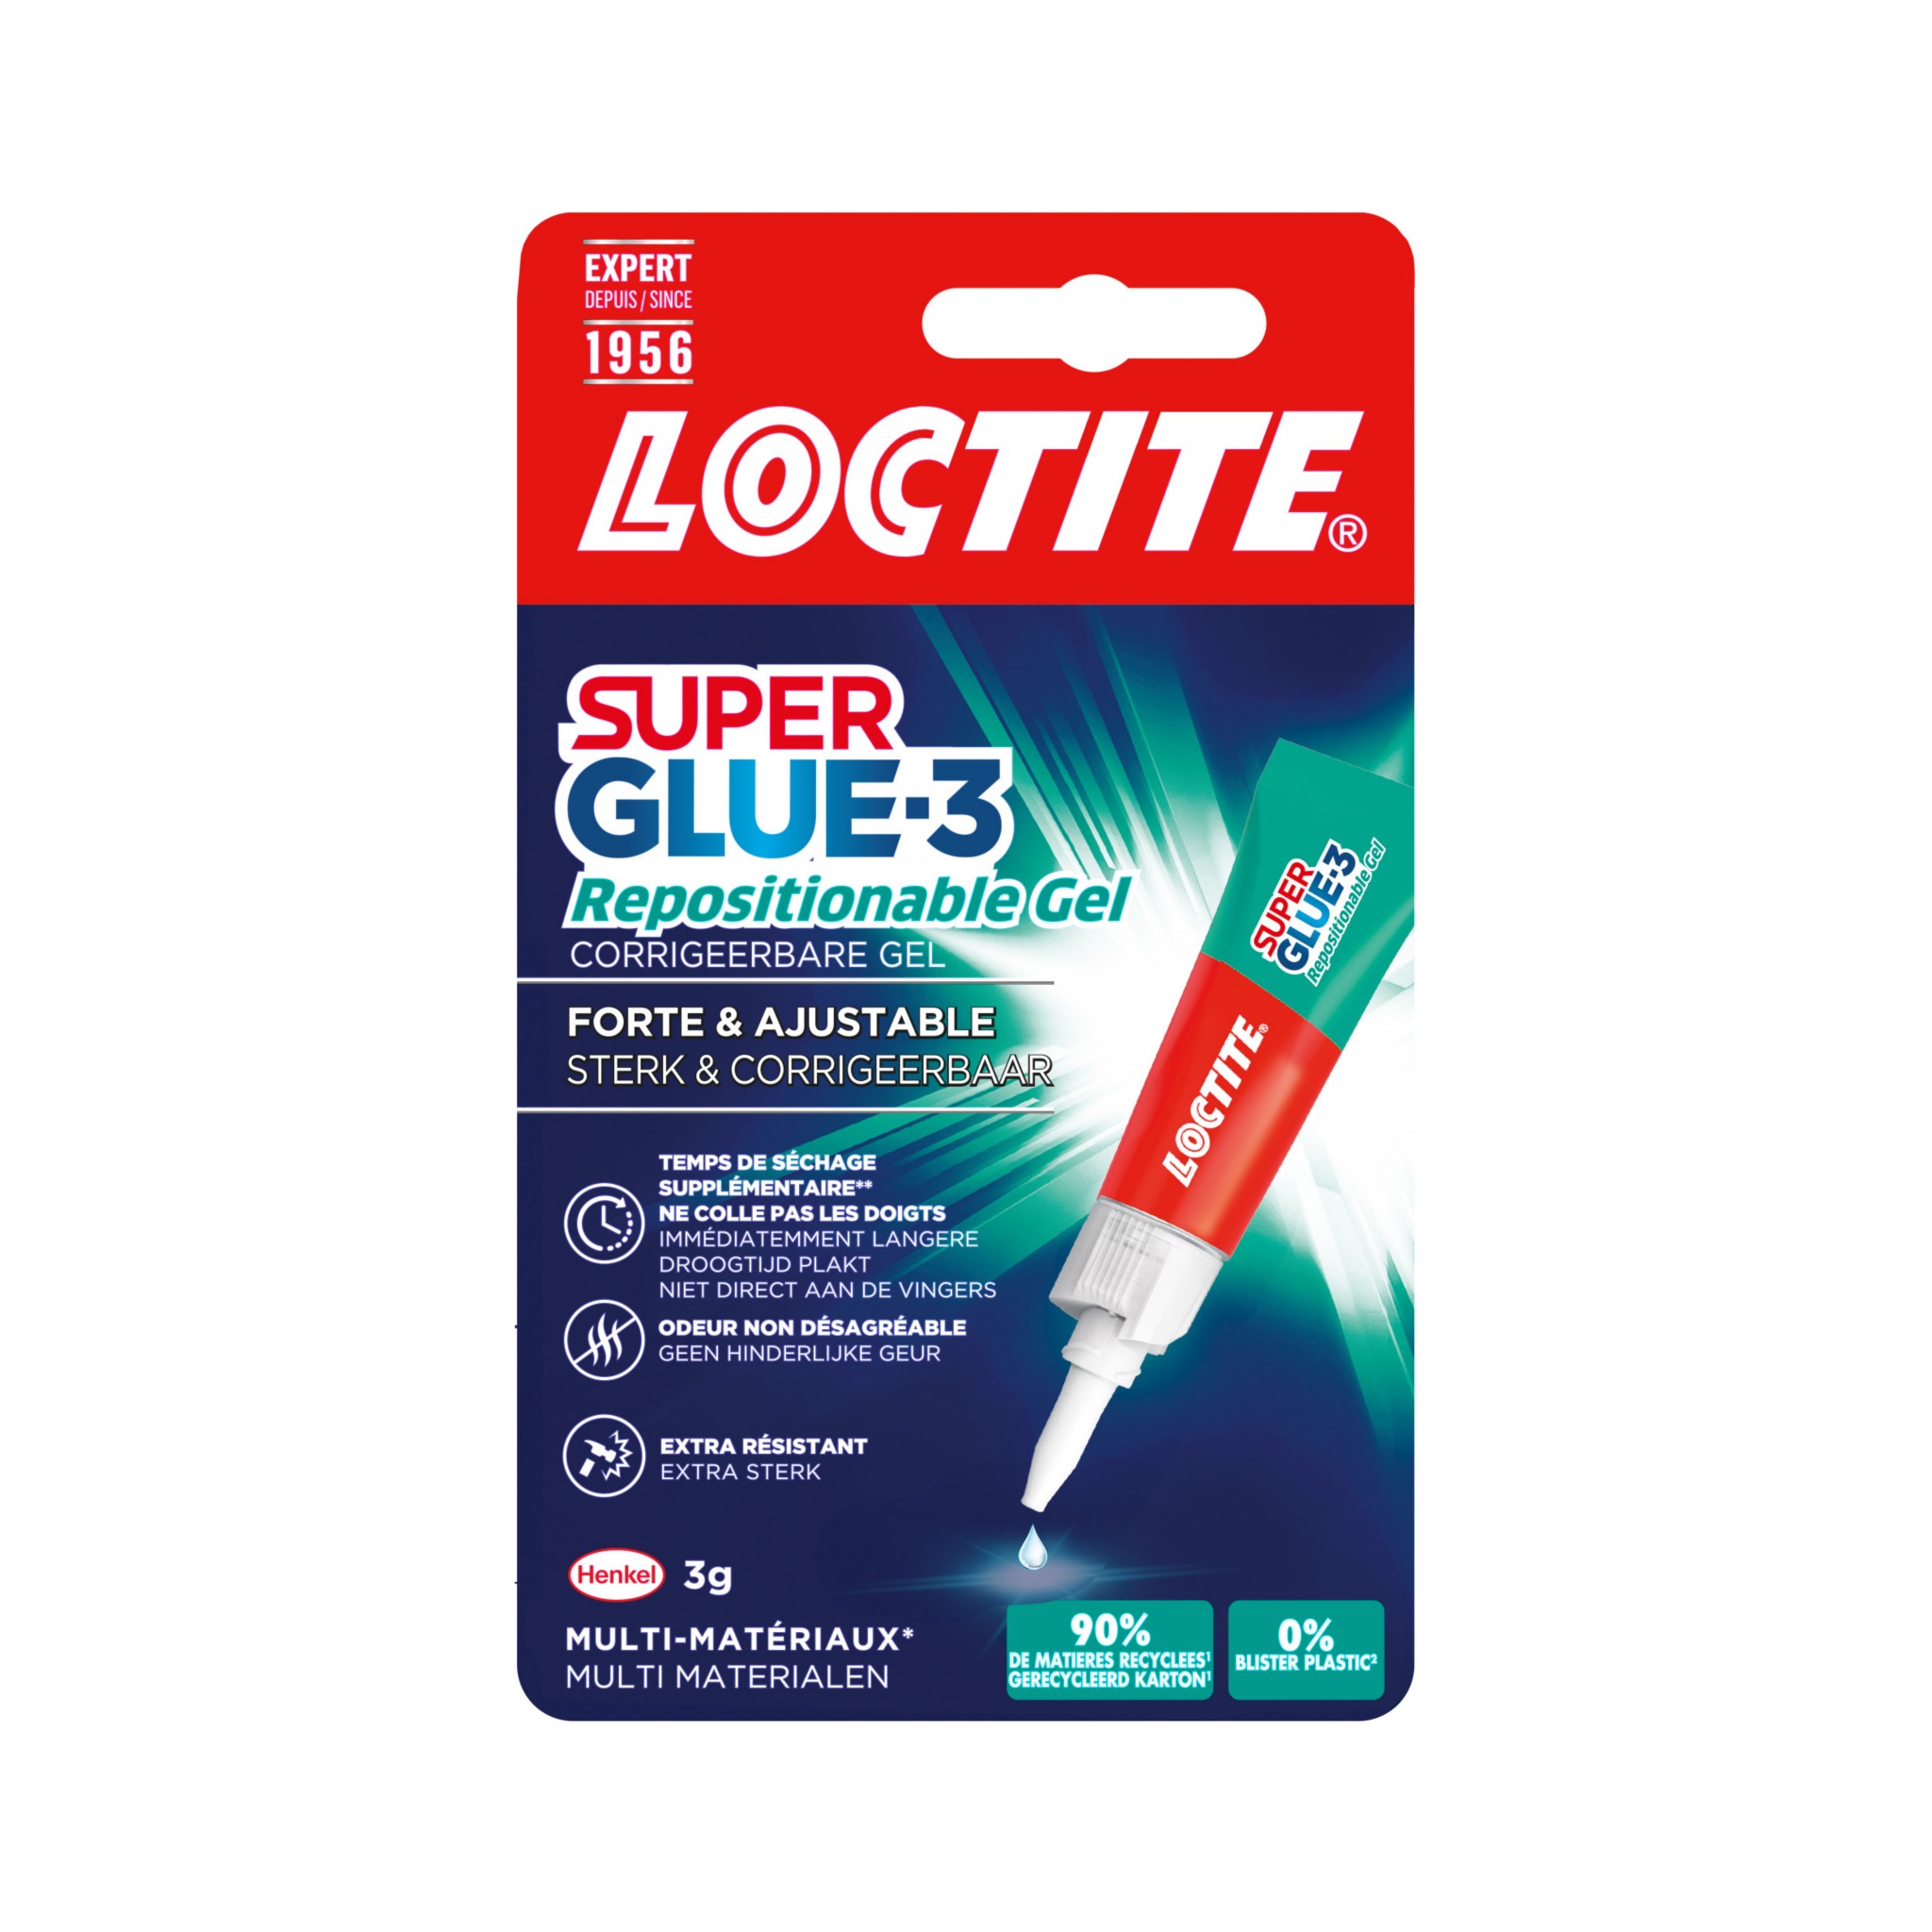 LOCTITE SUPERGLUE-3 Repositionable Gel